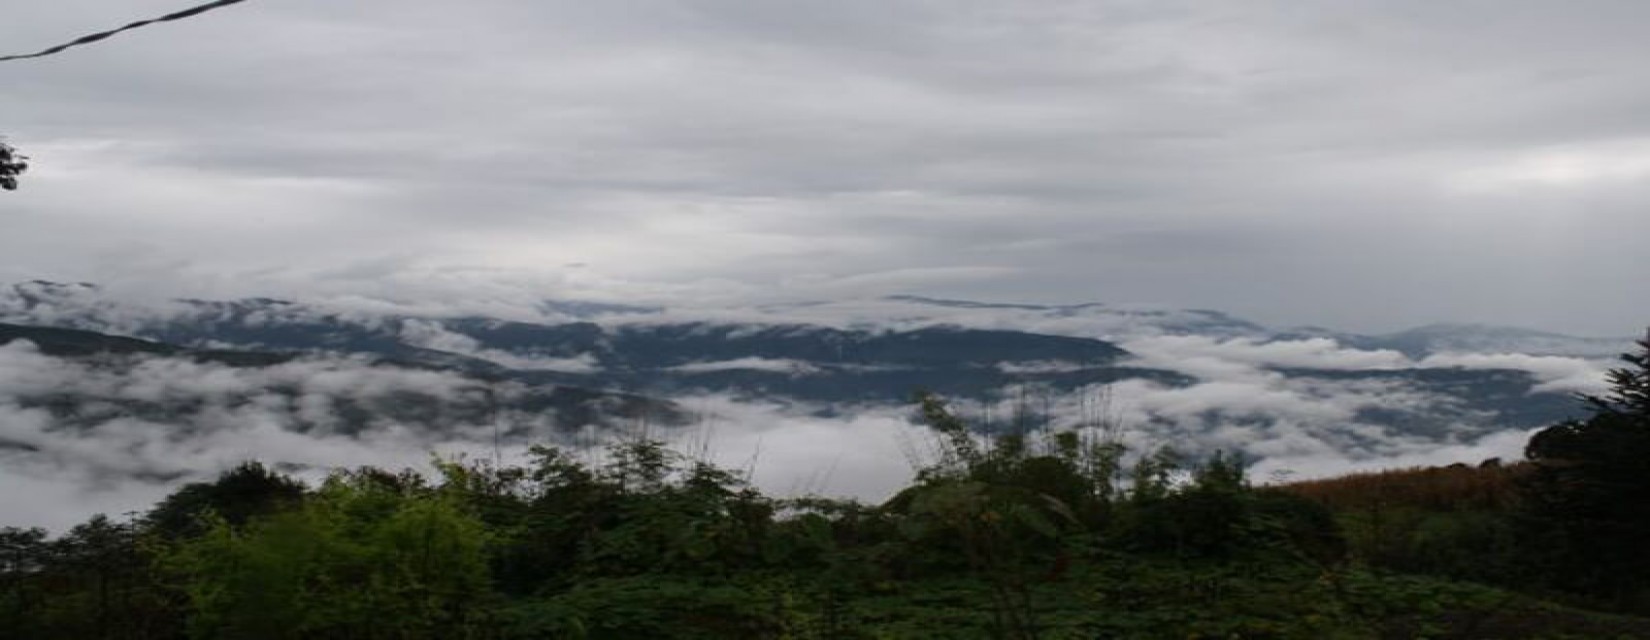 Kutumsang View - Gosaikunda Lake Trek